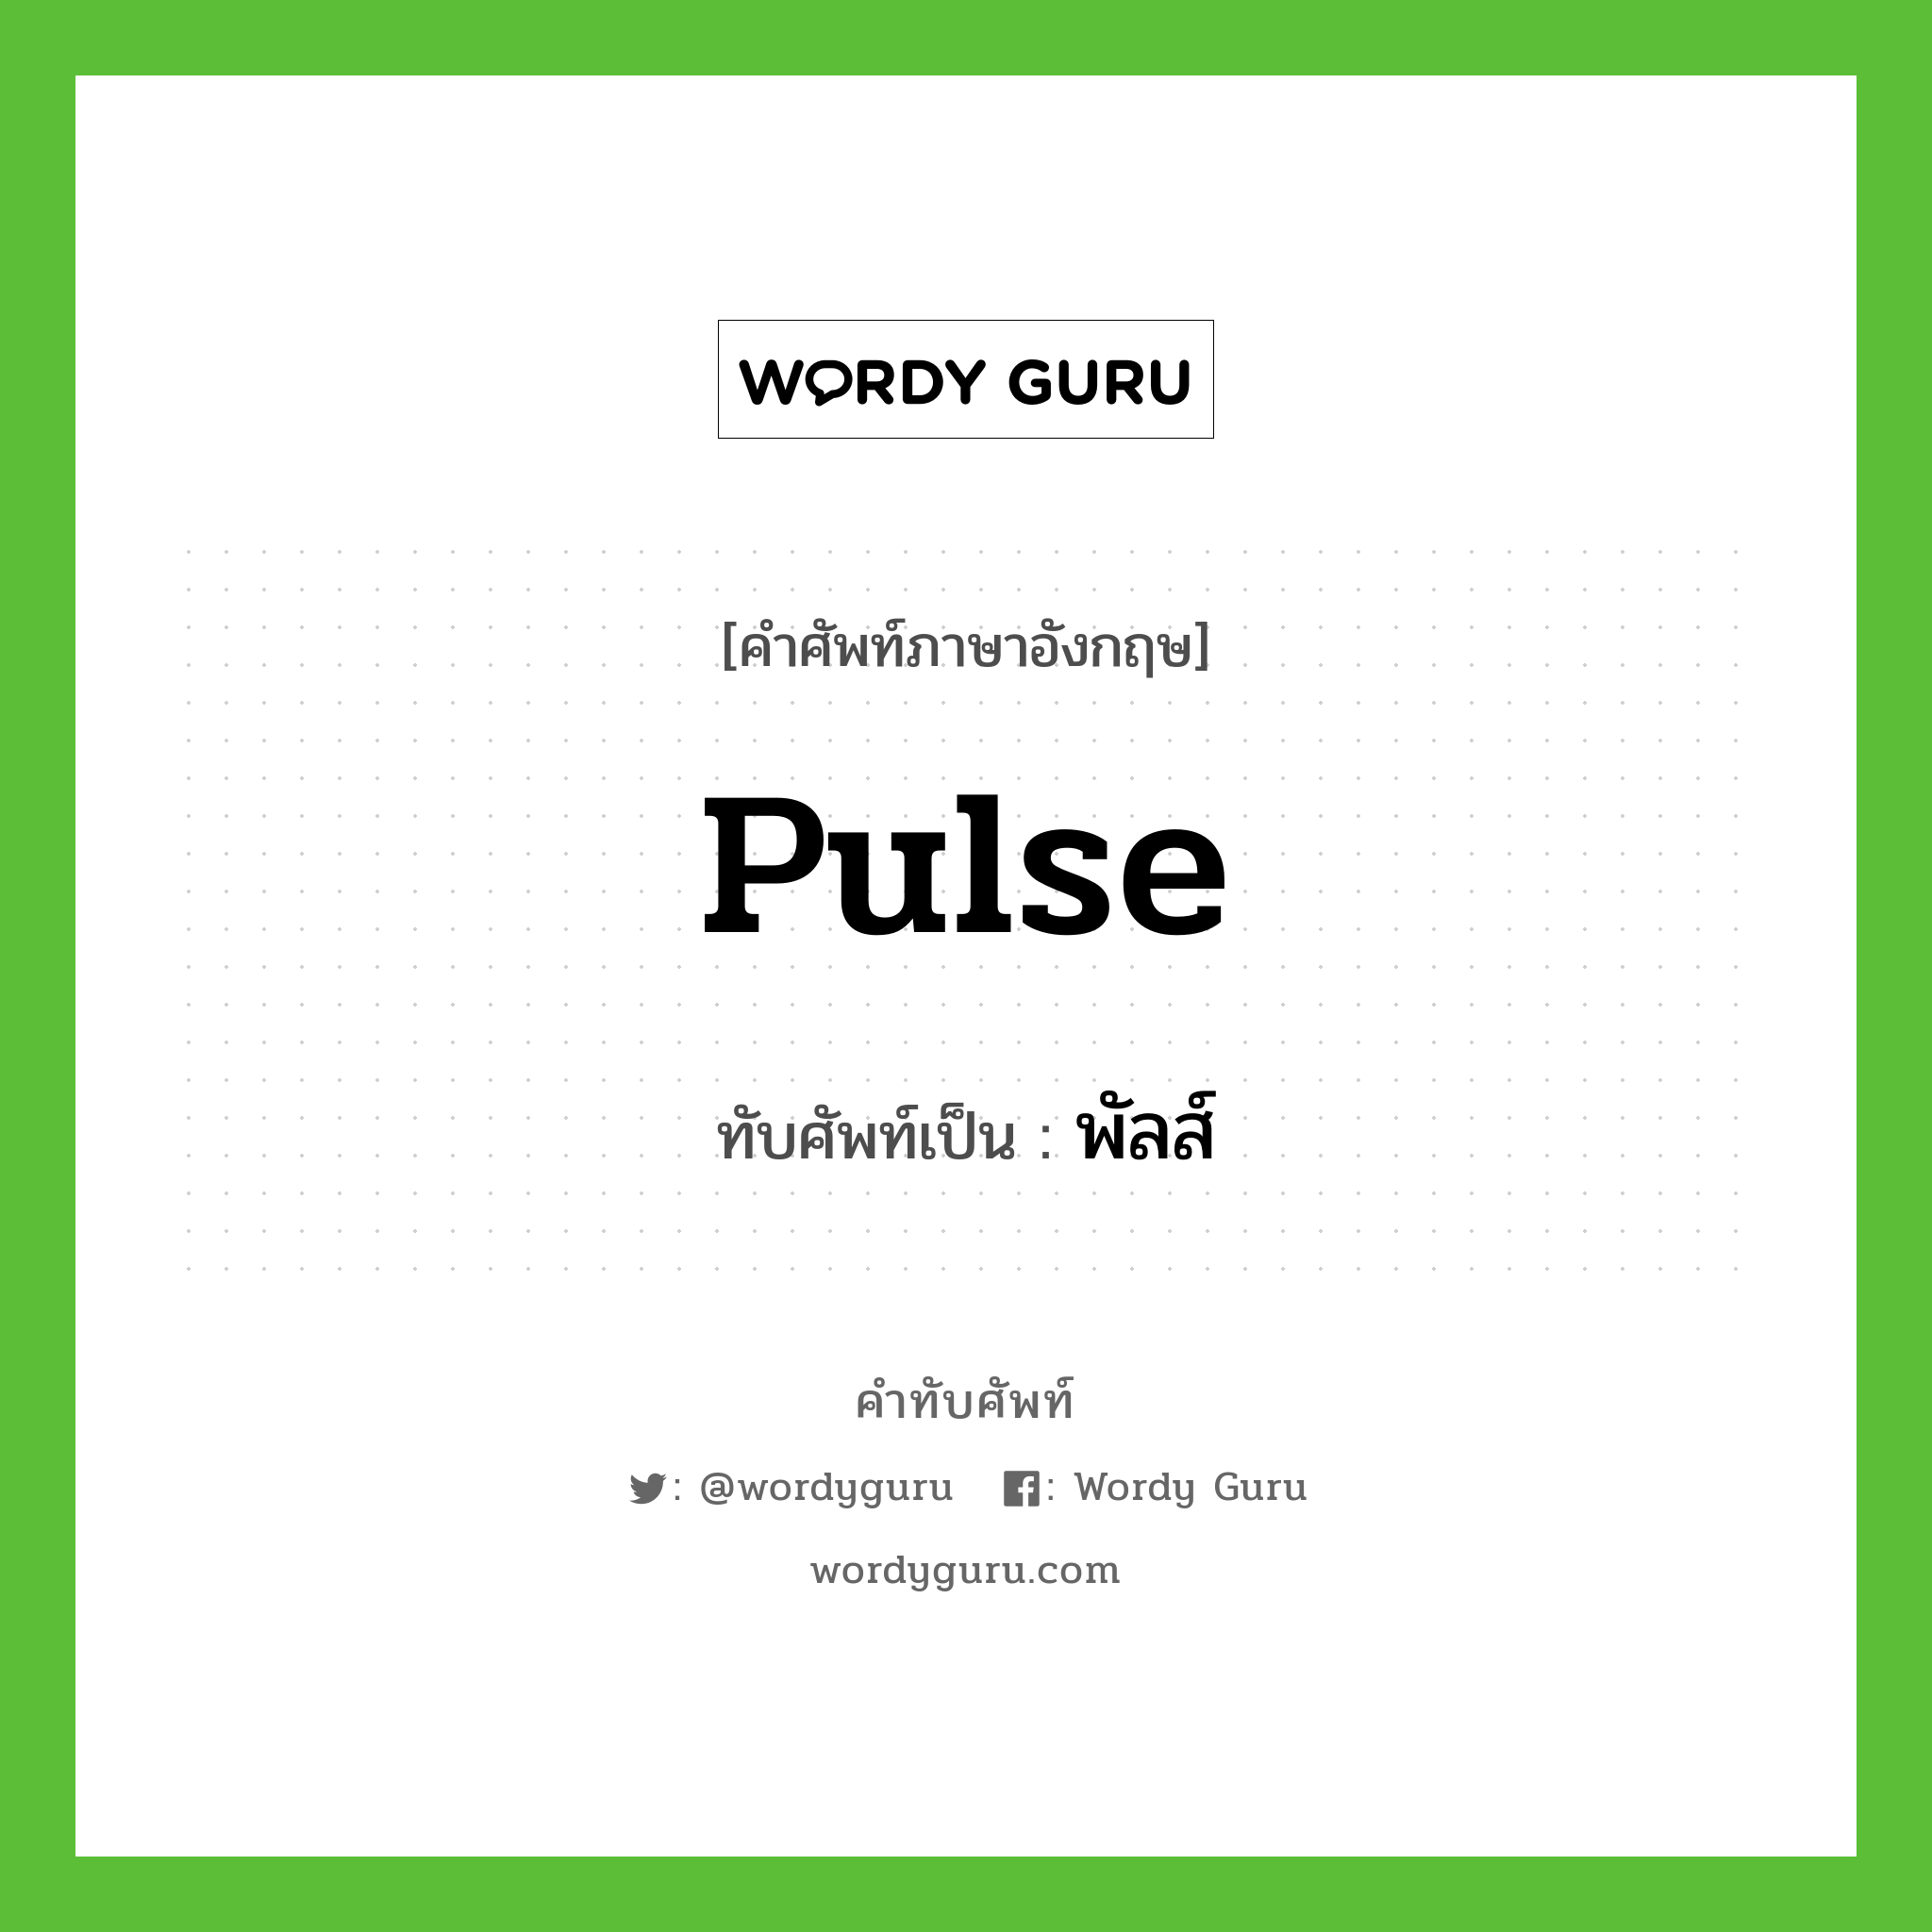 pulse เขียนเป็นคำไทยว่าอะไร?, คำศัพท์ภาษาอังกฤษ pulse ทับศัพท์เป็น พัลส์